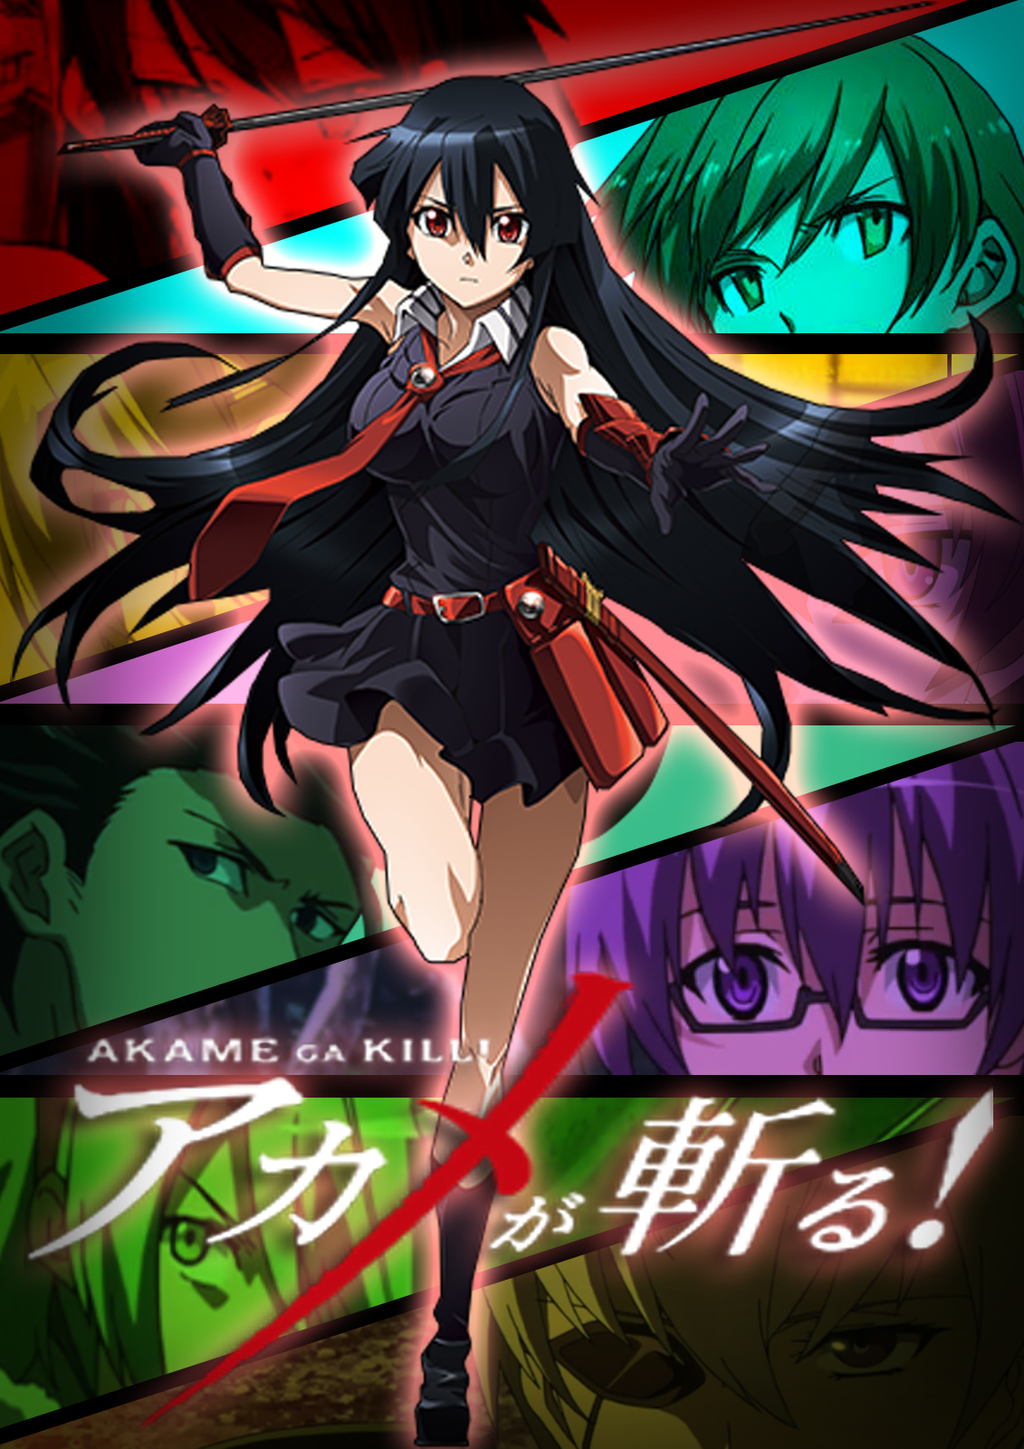 Akame Ga Kill! wallpapers, Anime, HQ Akame Ga Kill! pictures | 4K